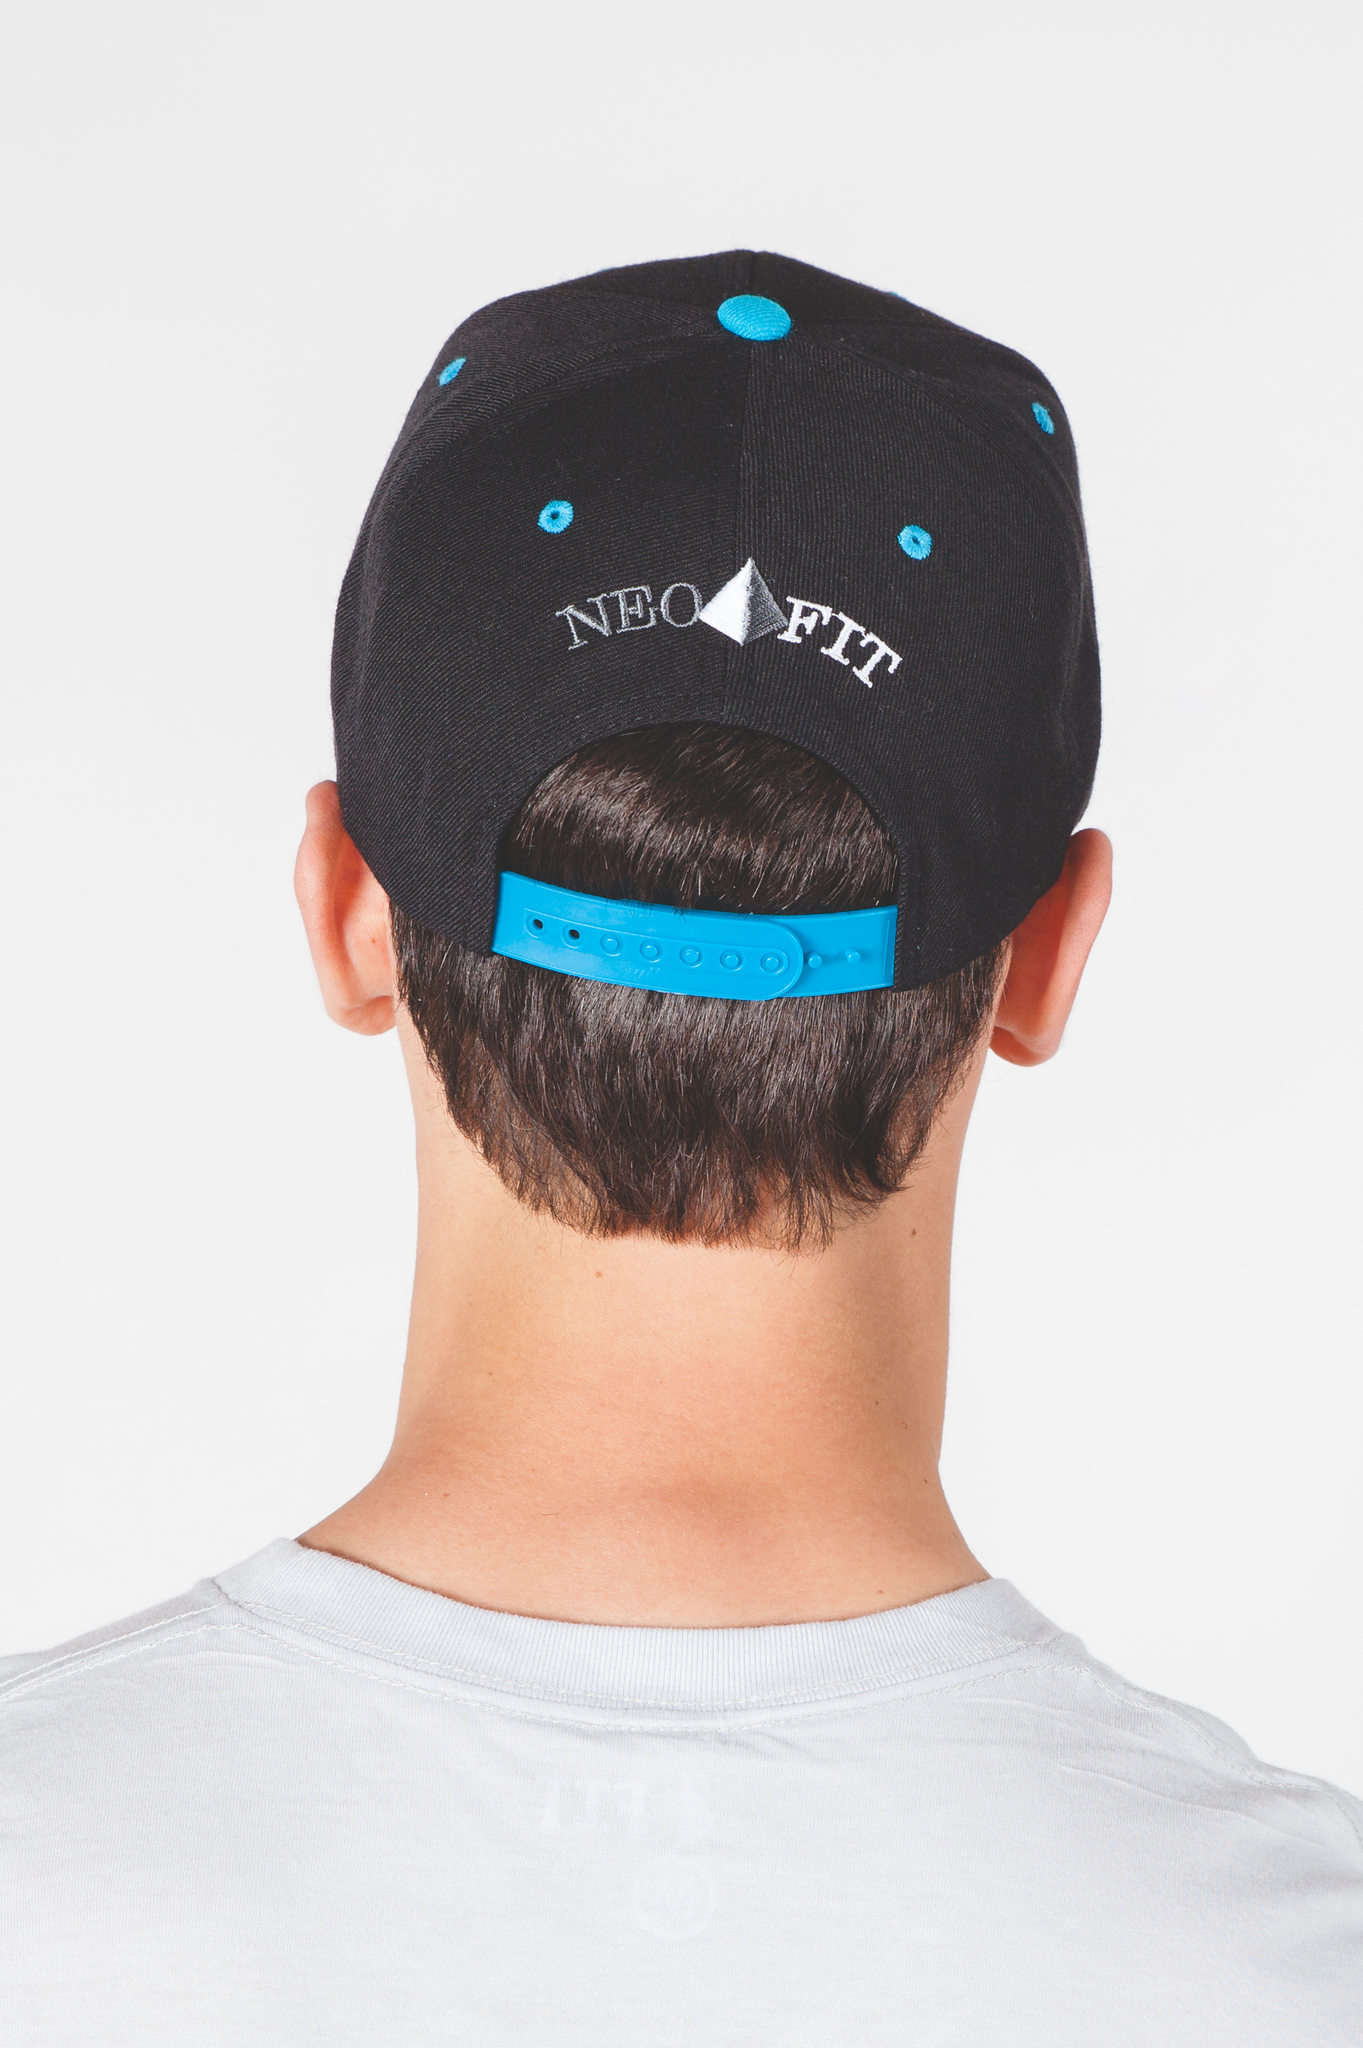 Flat Brim Adjustable Snapback Hat Cap - Black/Aqua for Men & Women